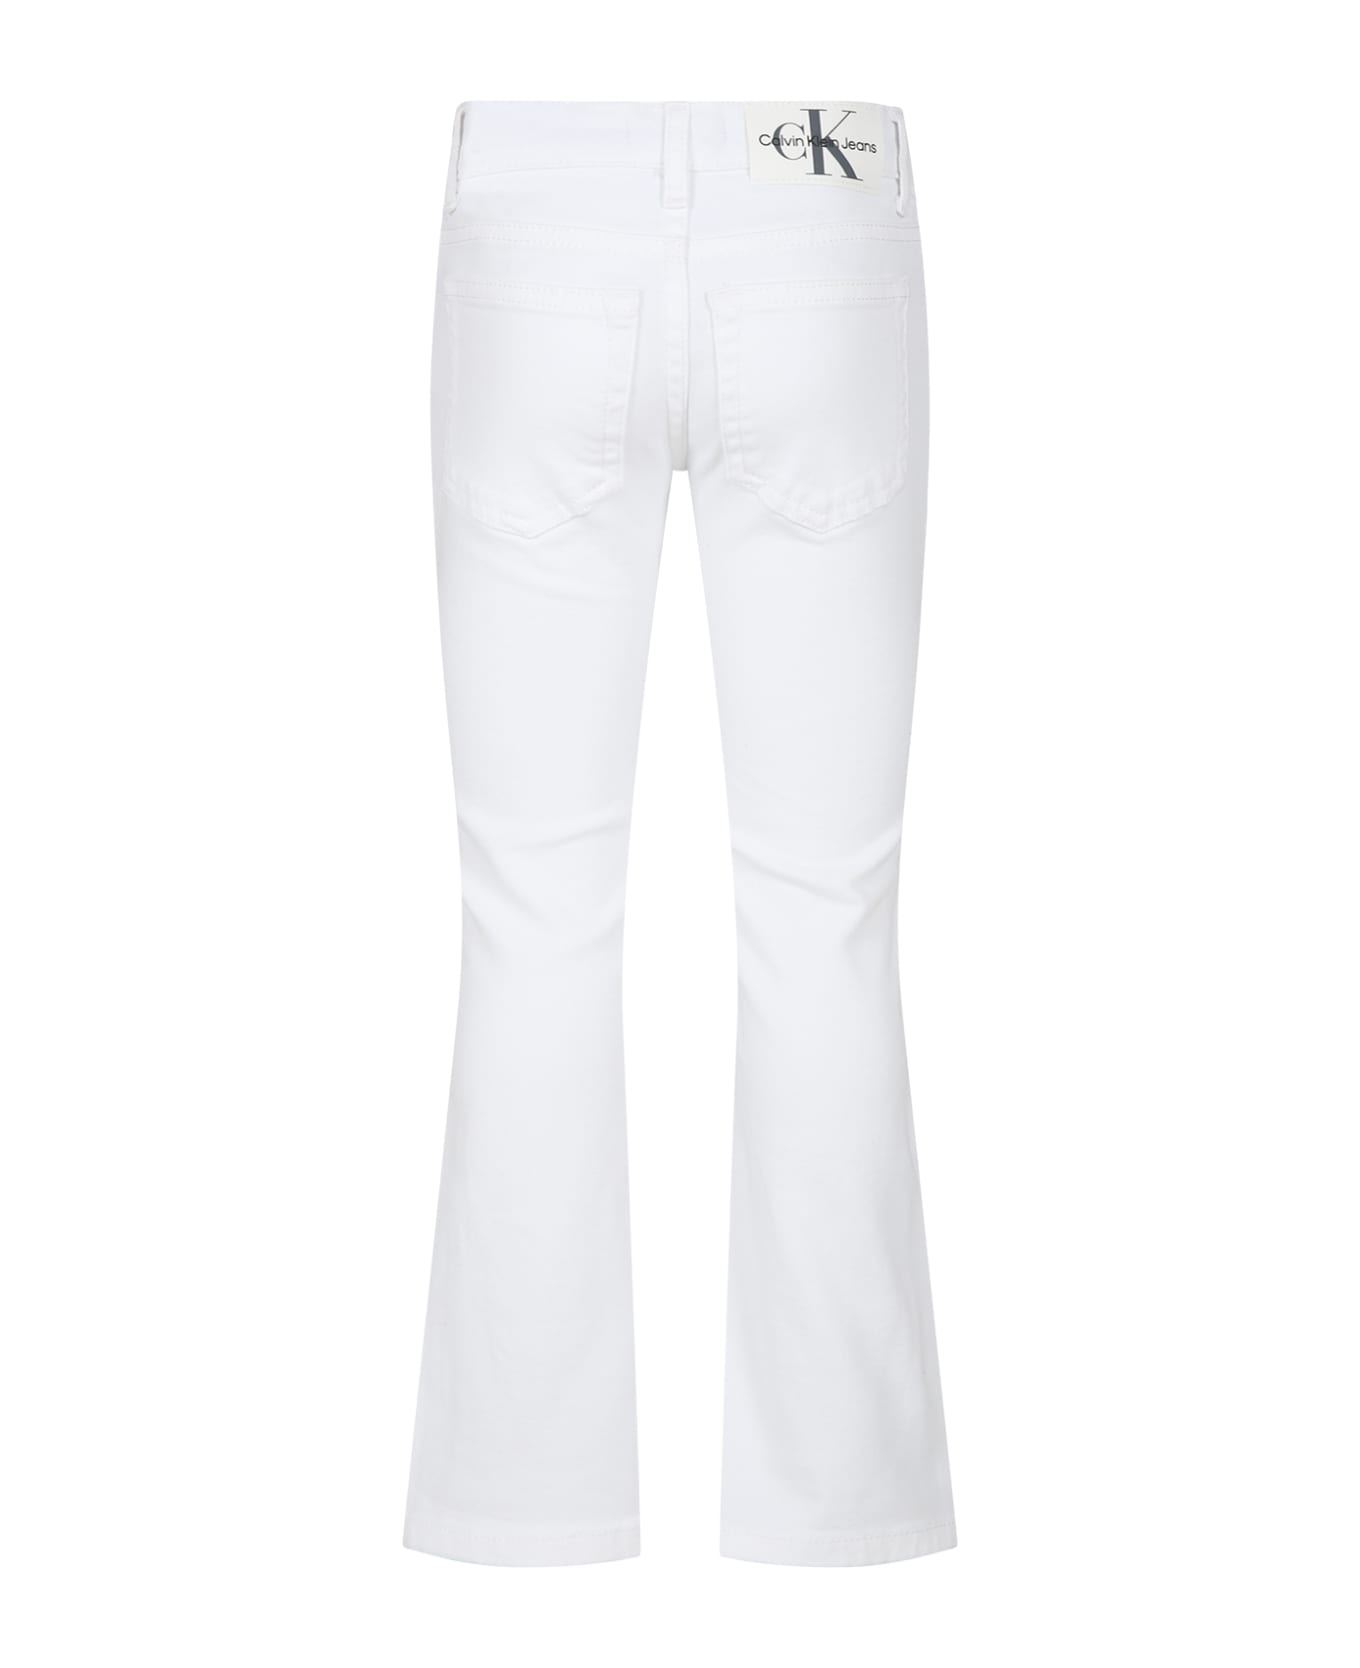 Calvin Klein White Jeans For Girl With Logo - White